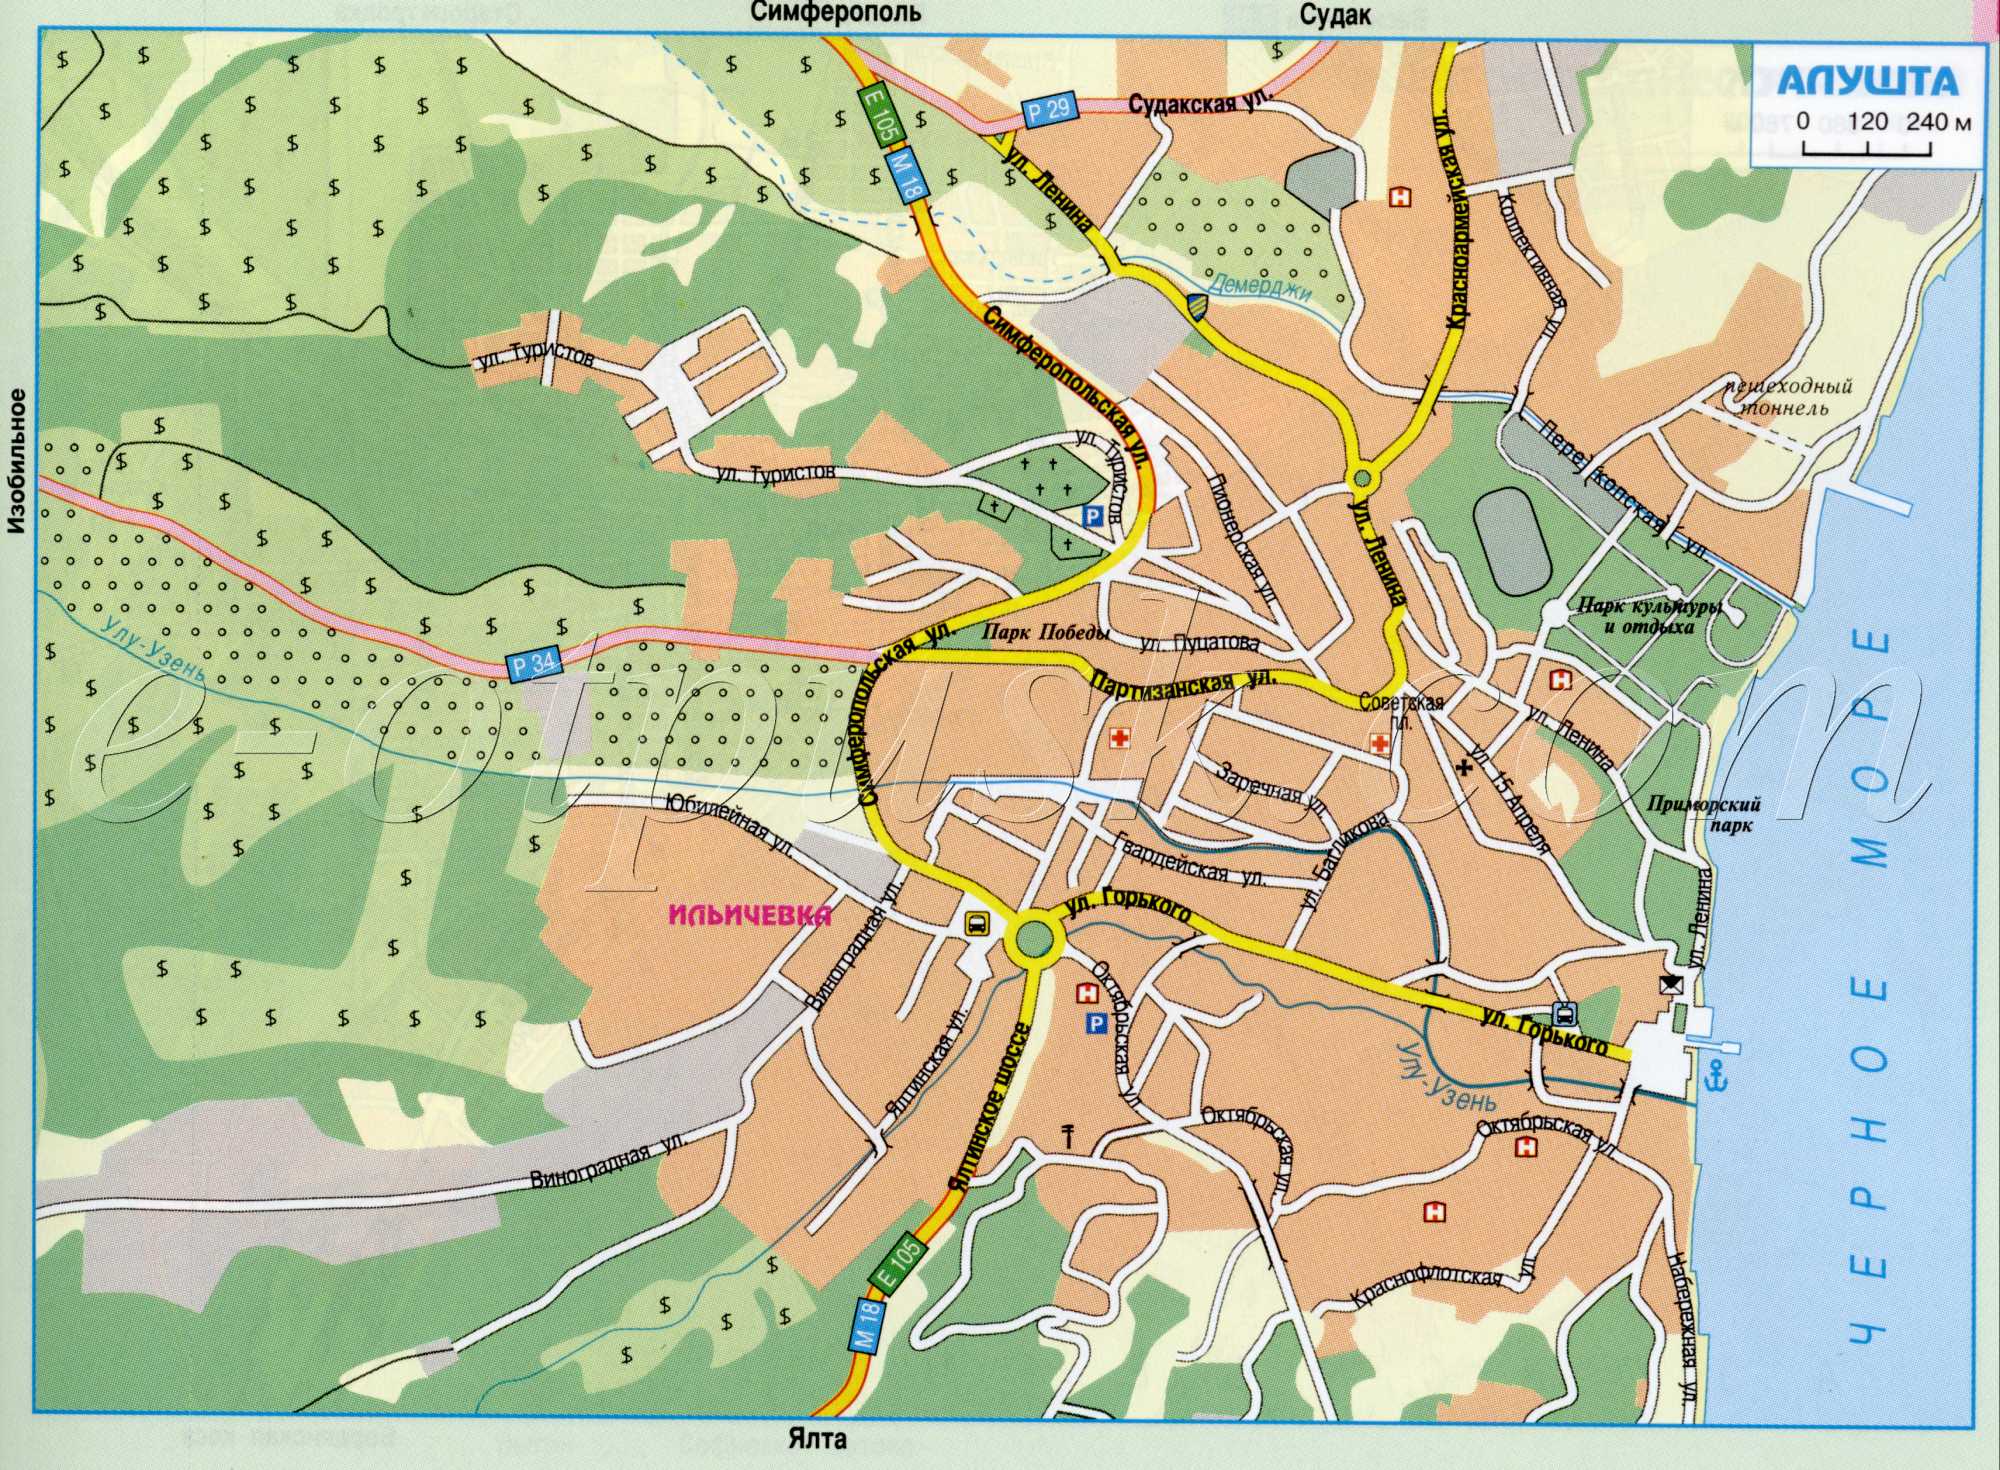 Karte von Aluschta. Karte von Straßen der Stadt Aluschta, Krim. kostenlos herunterladen